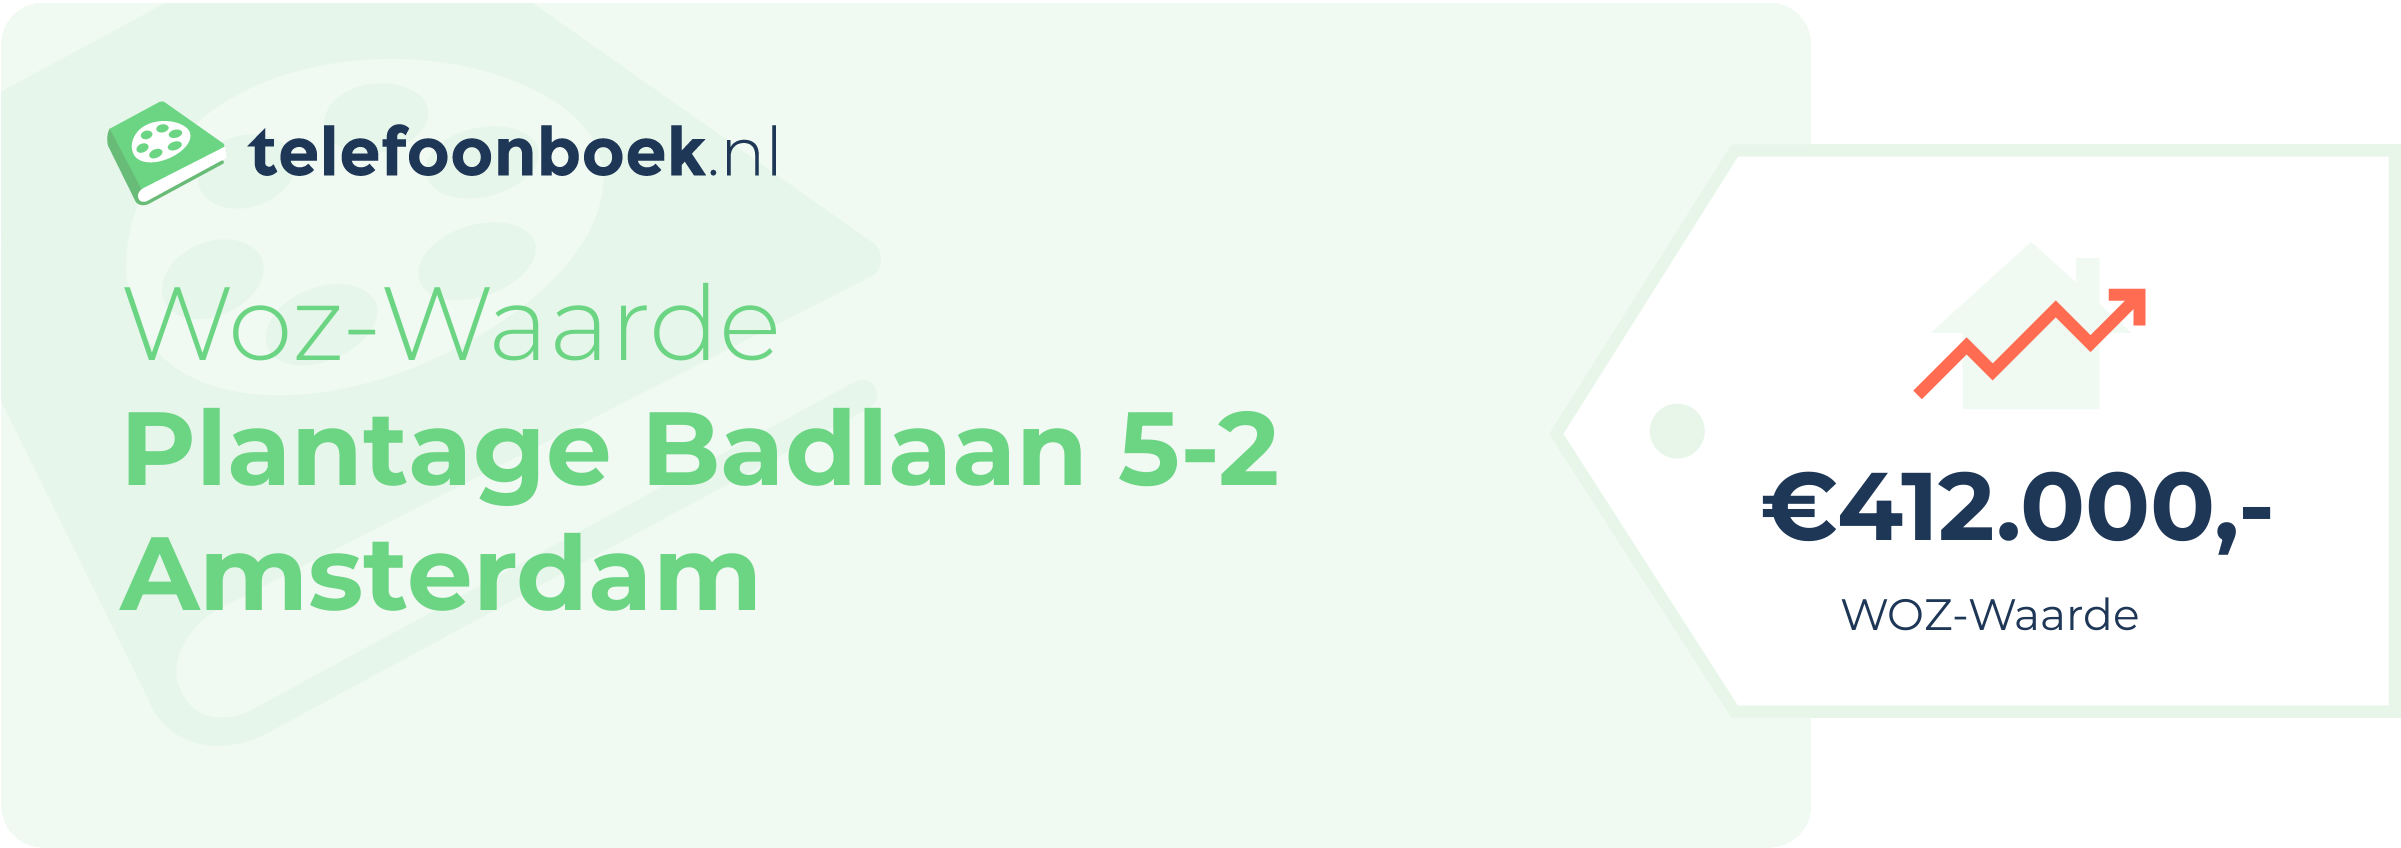 WOZ-waarde Plantage Badlaan 5-2 Amsterdam